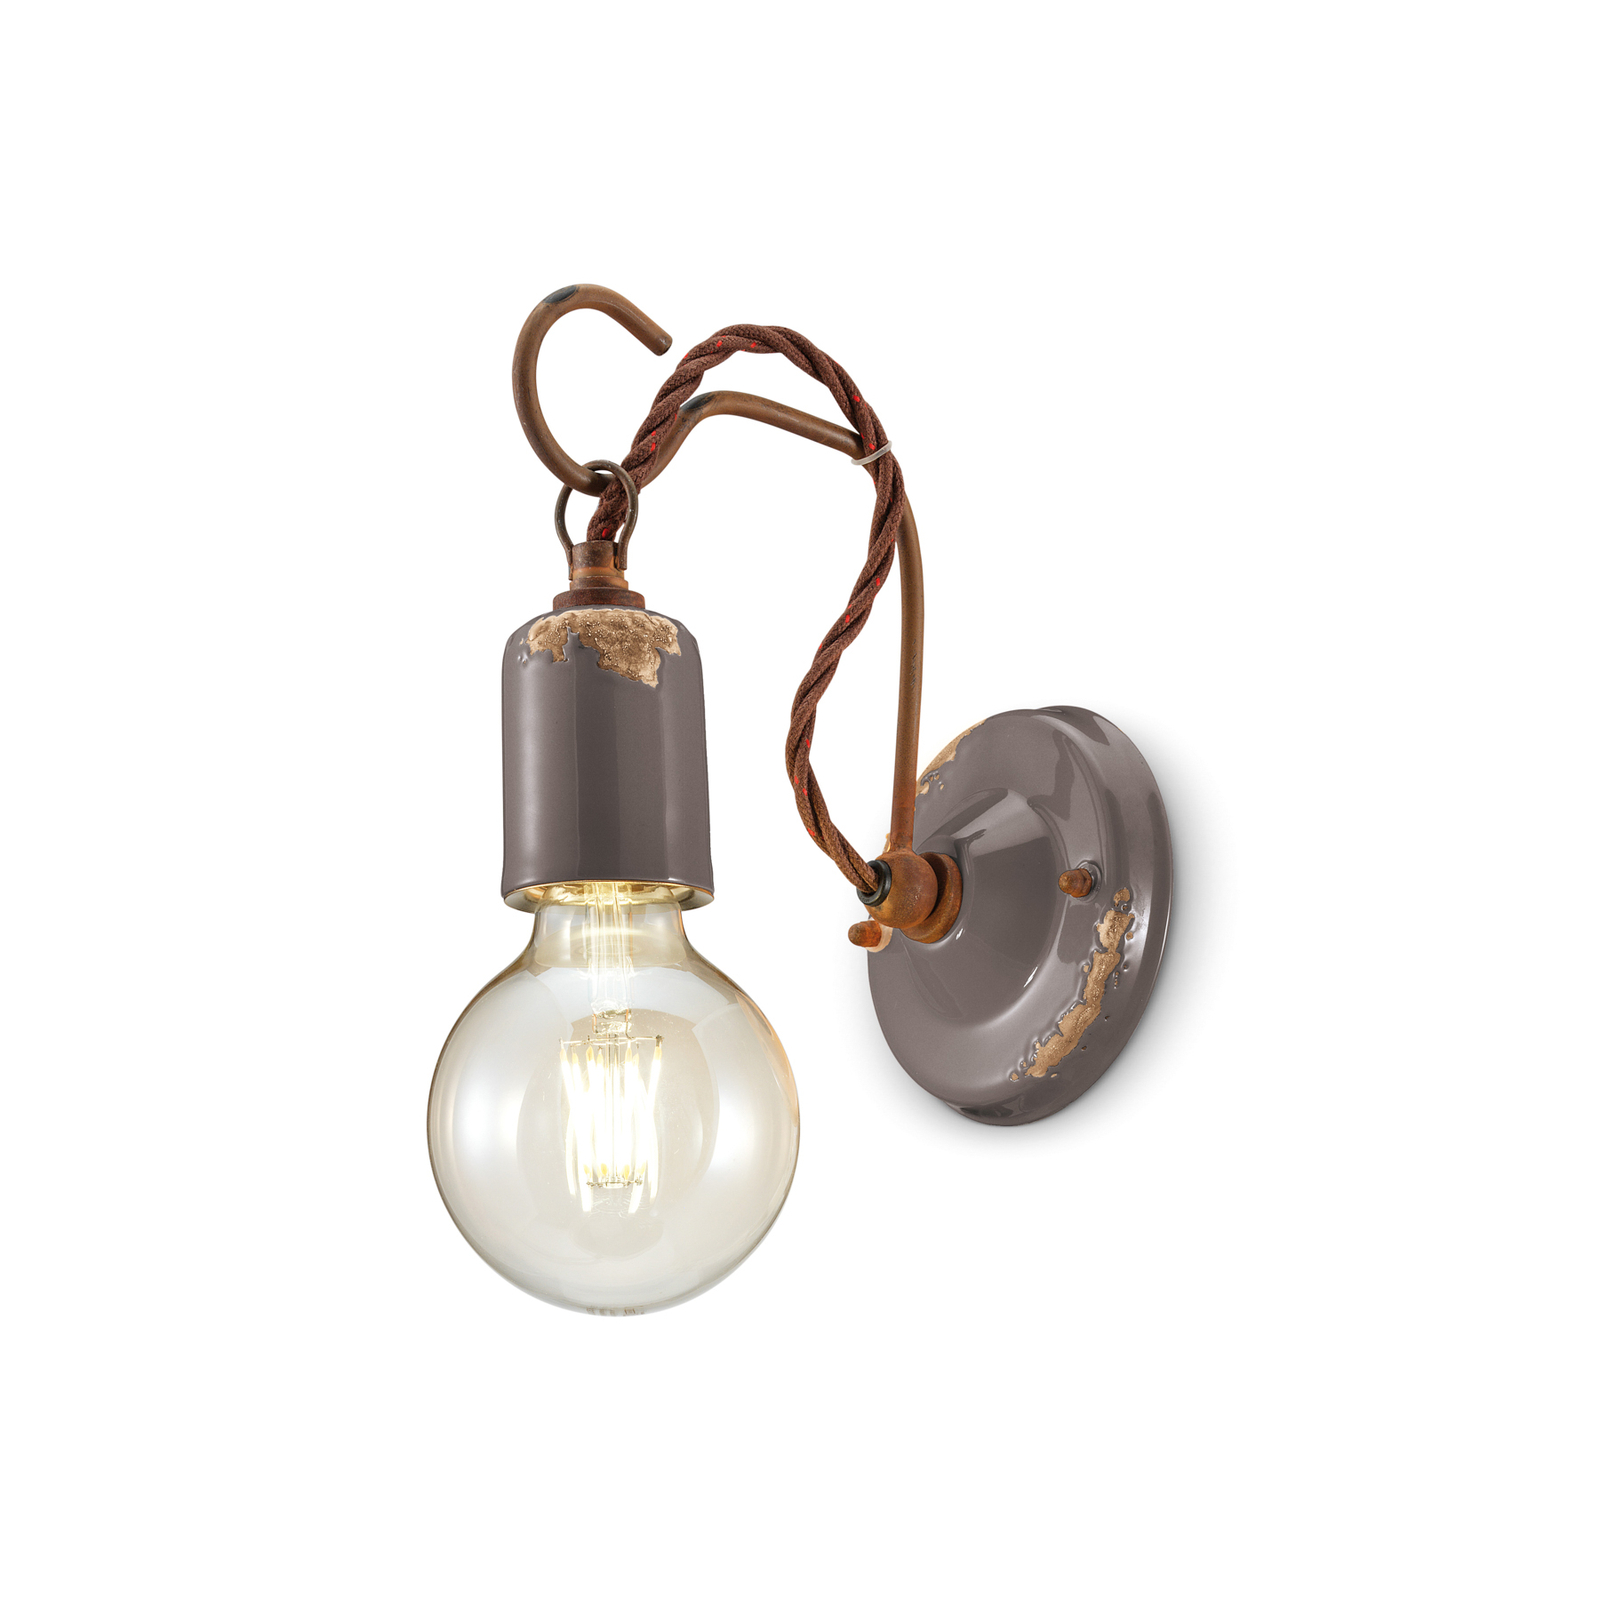 C665 wandlamp in vintage stijl, grijs